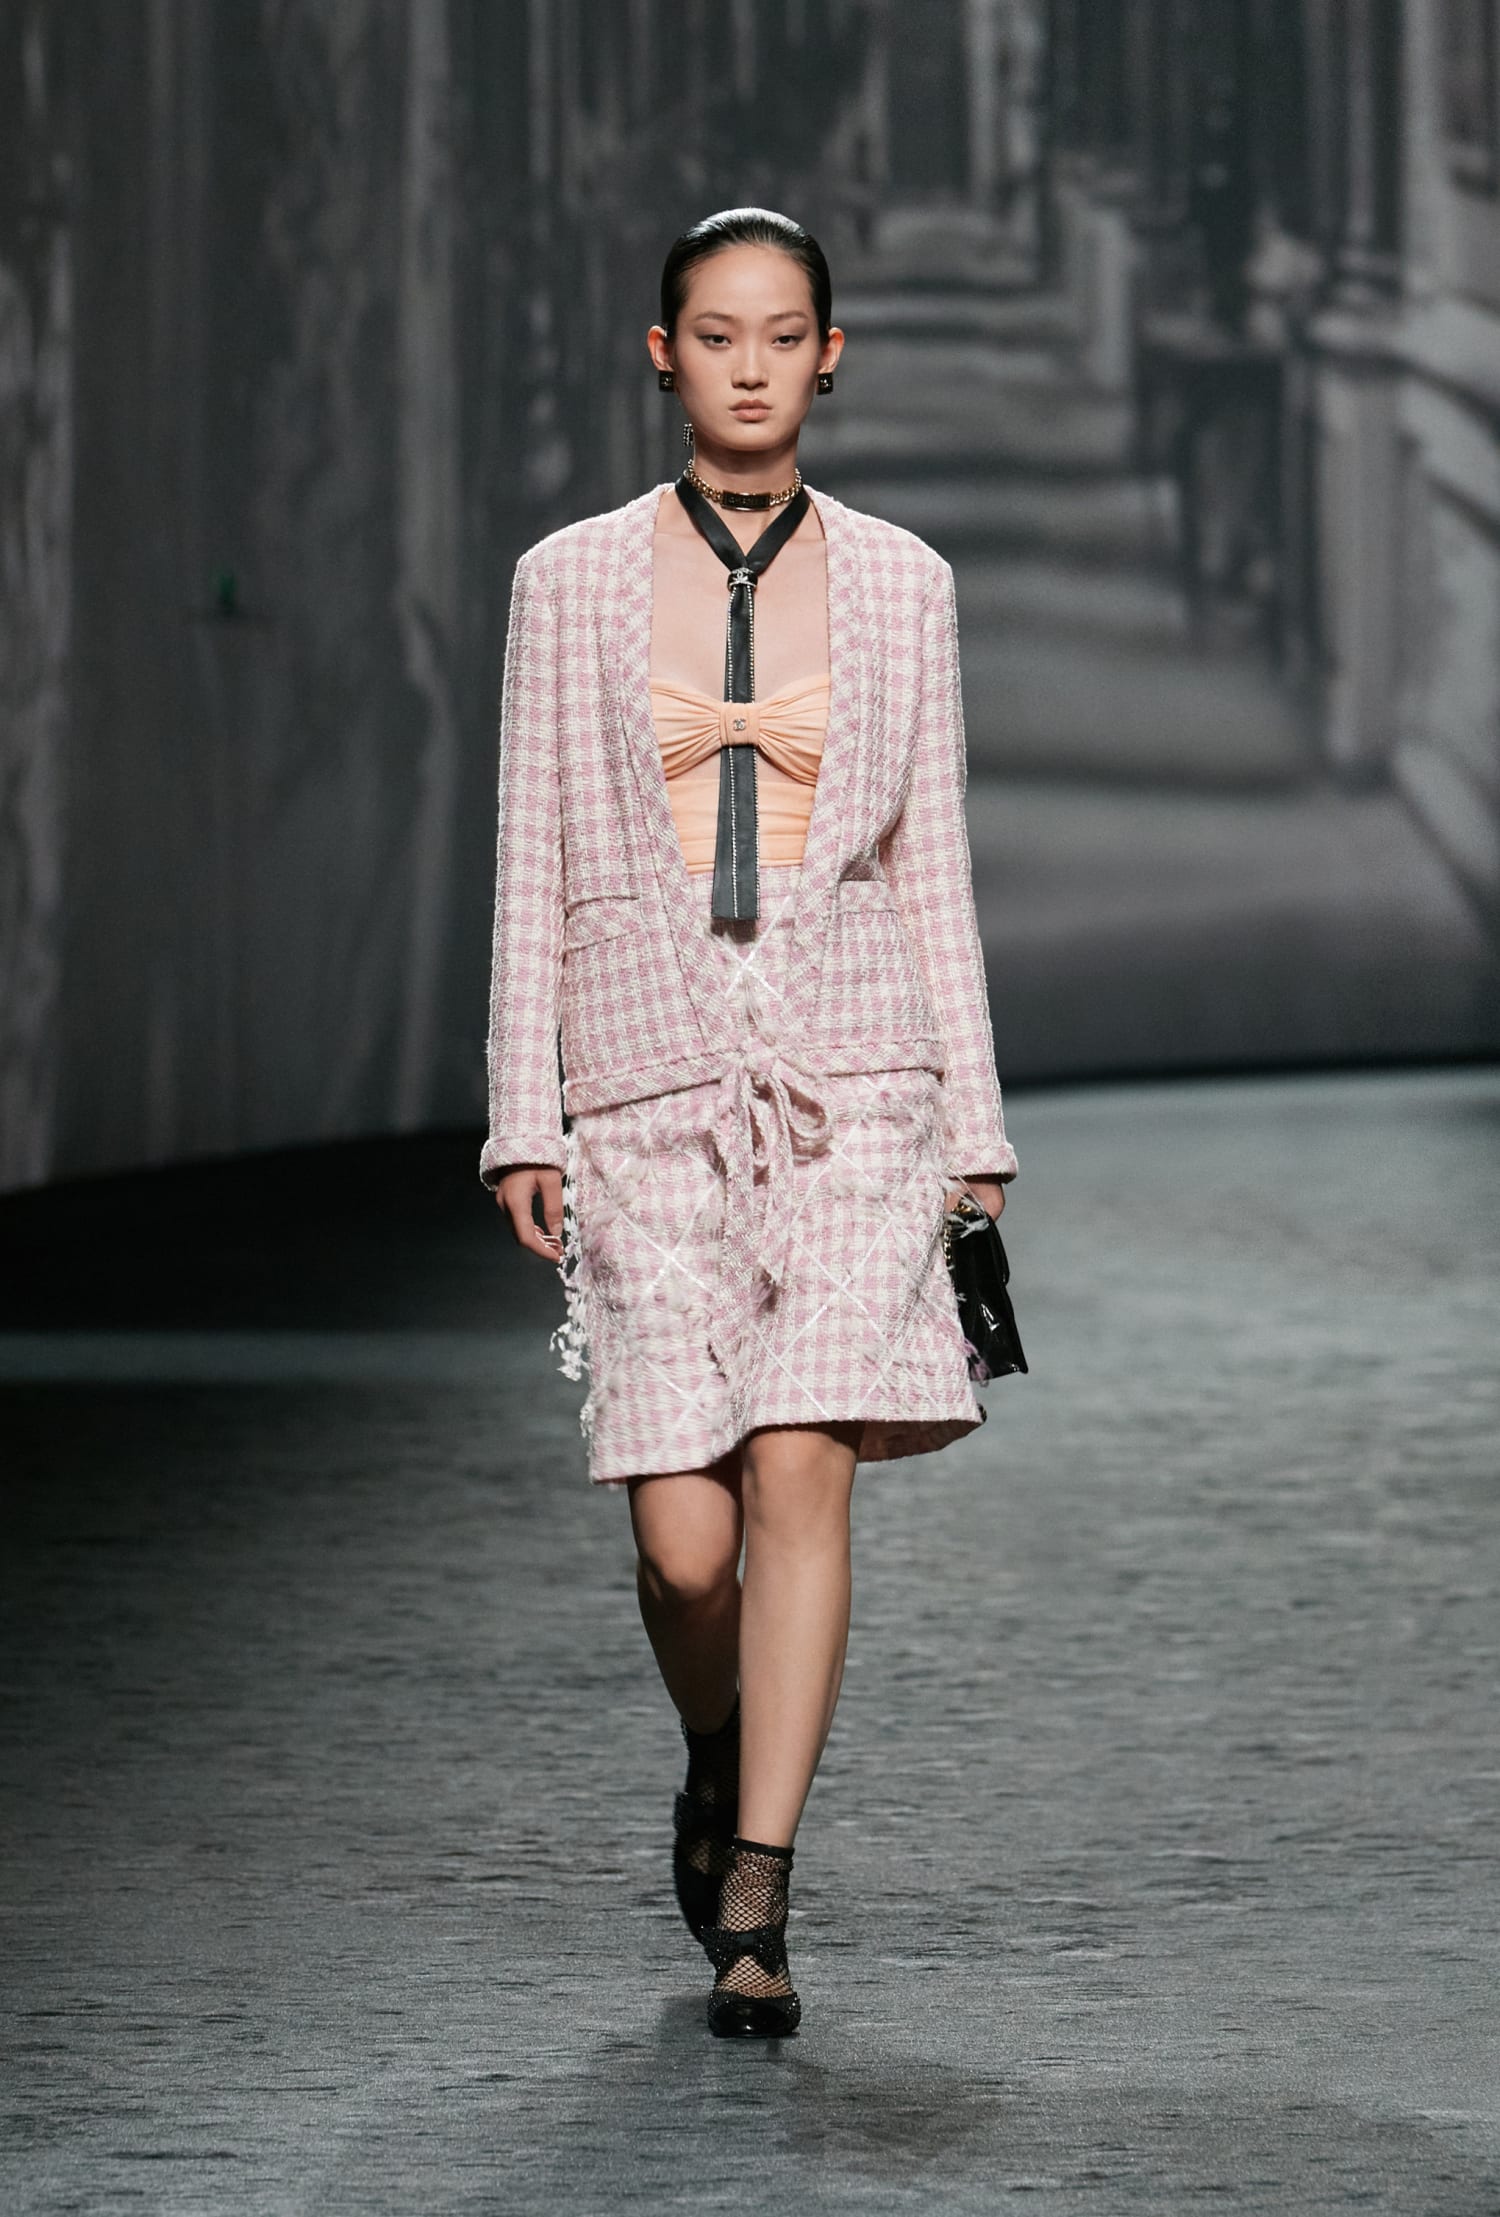 Gigi Hadid and Kaia Gerber Own the Chanel Runway at Paris Fashion Week